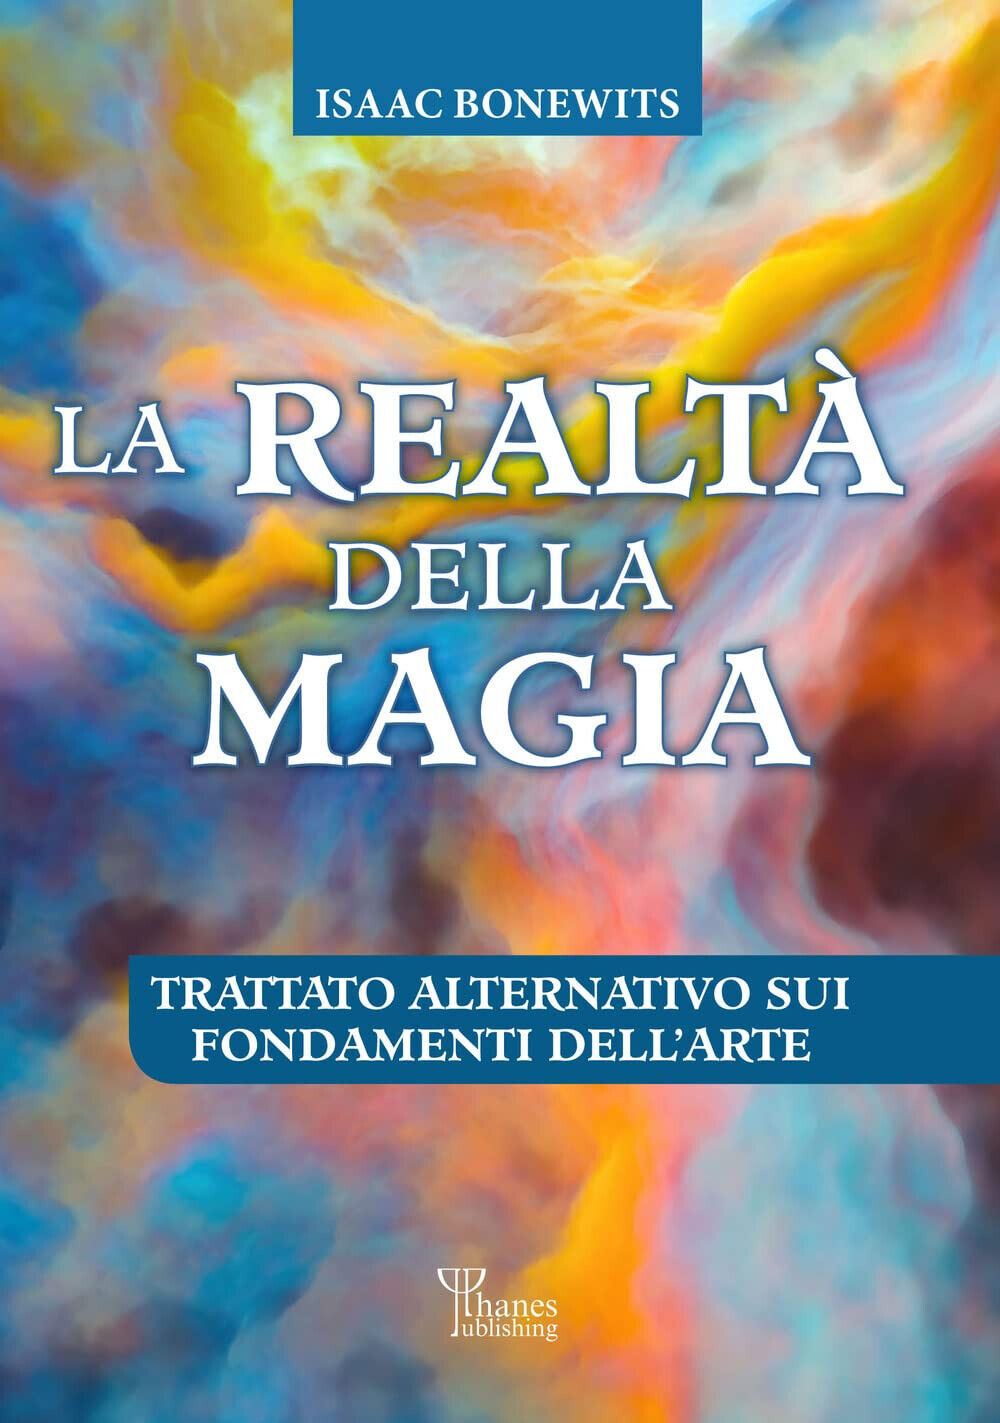 La realt? della magia - Isaac Bonewits - Phanes Publishing, 2022